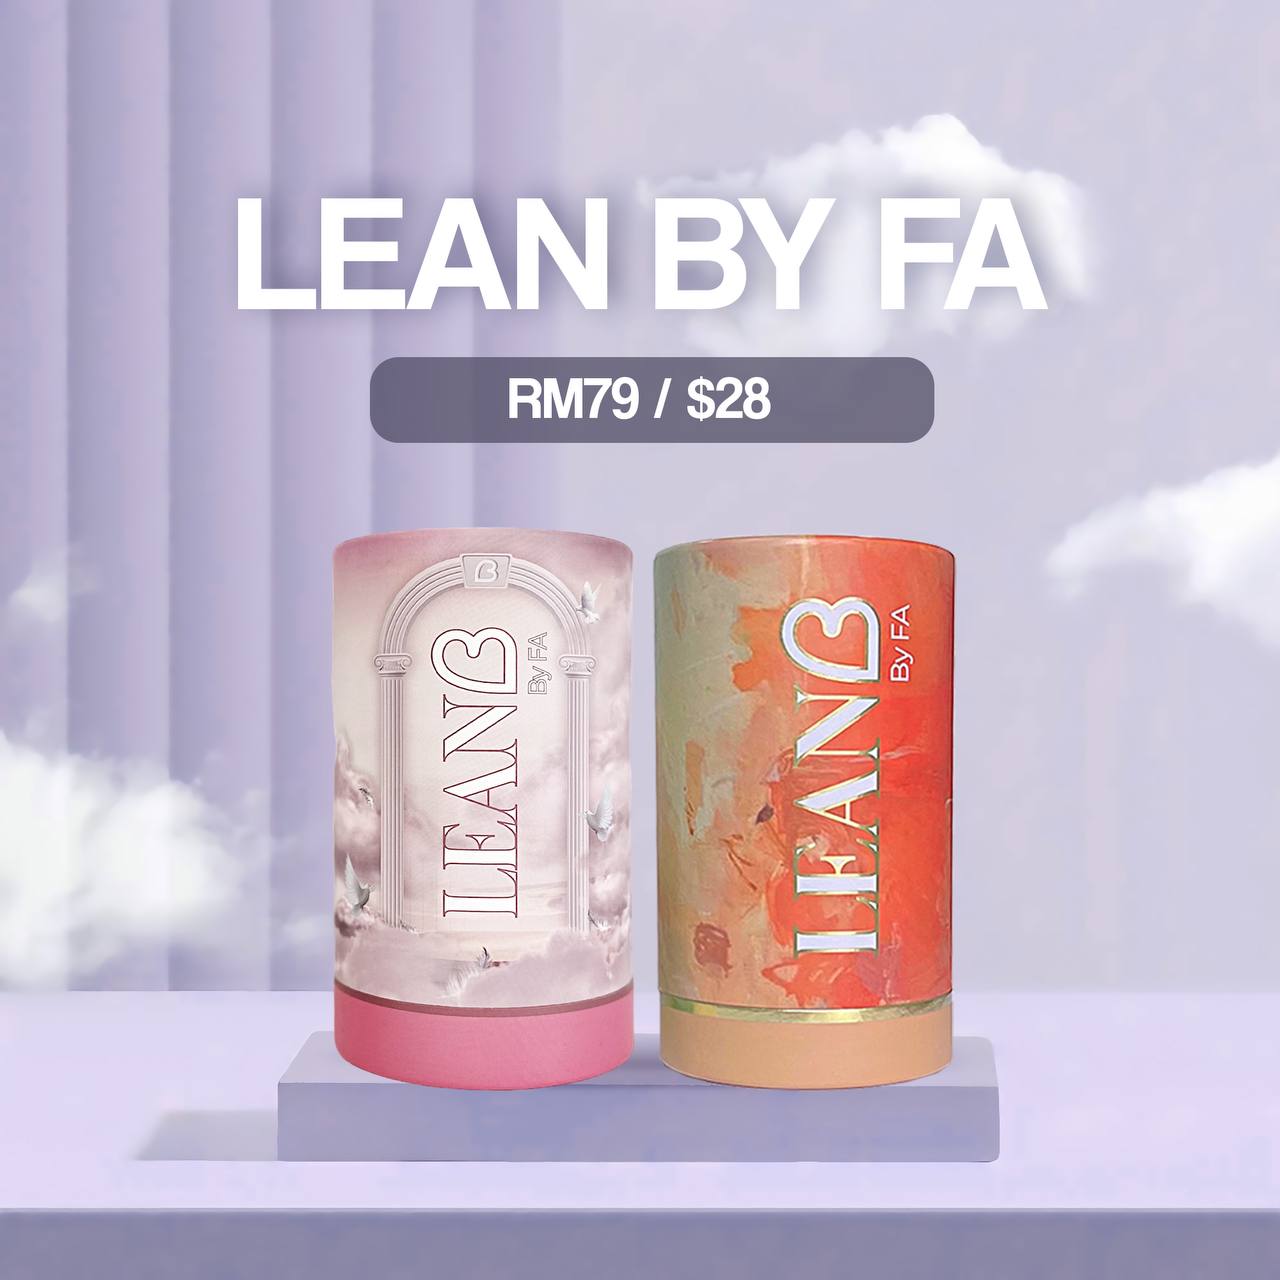 Lean by Fa